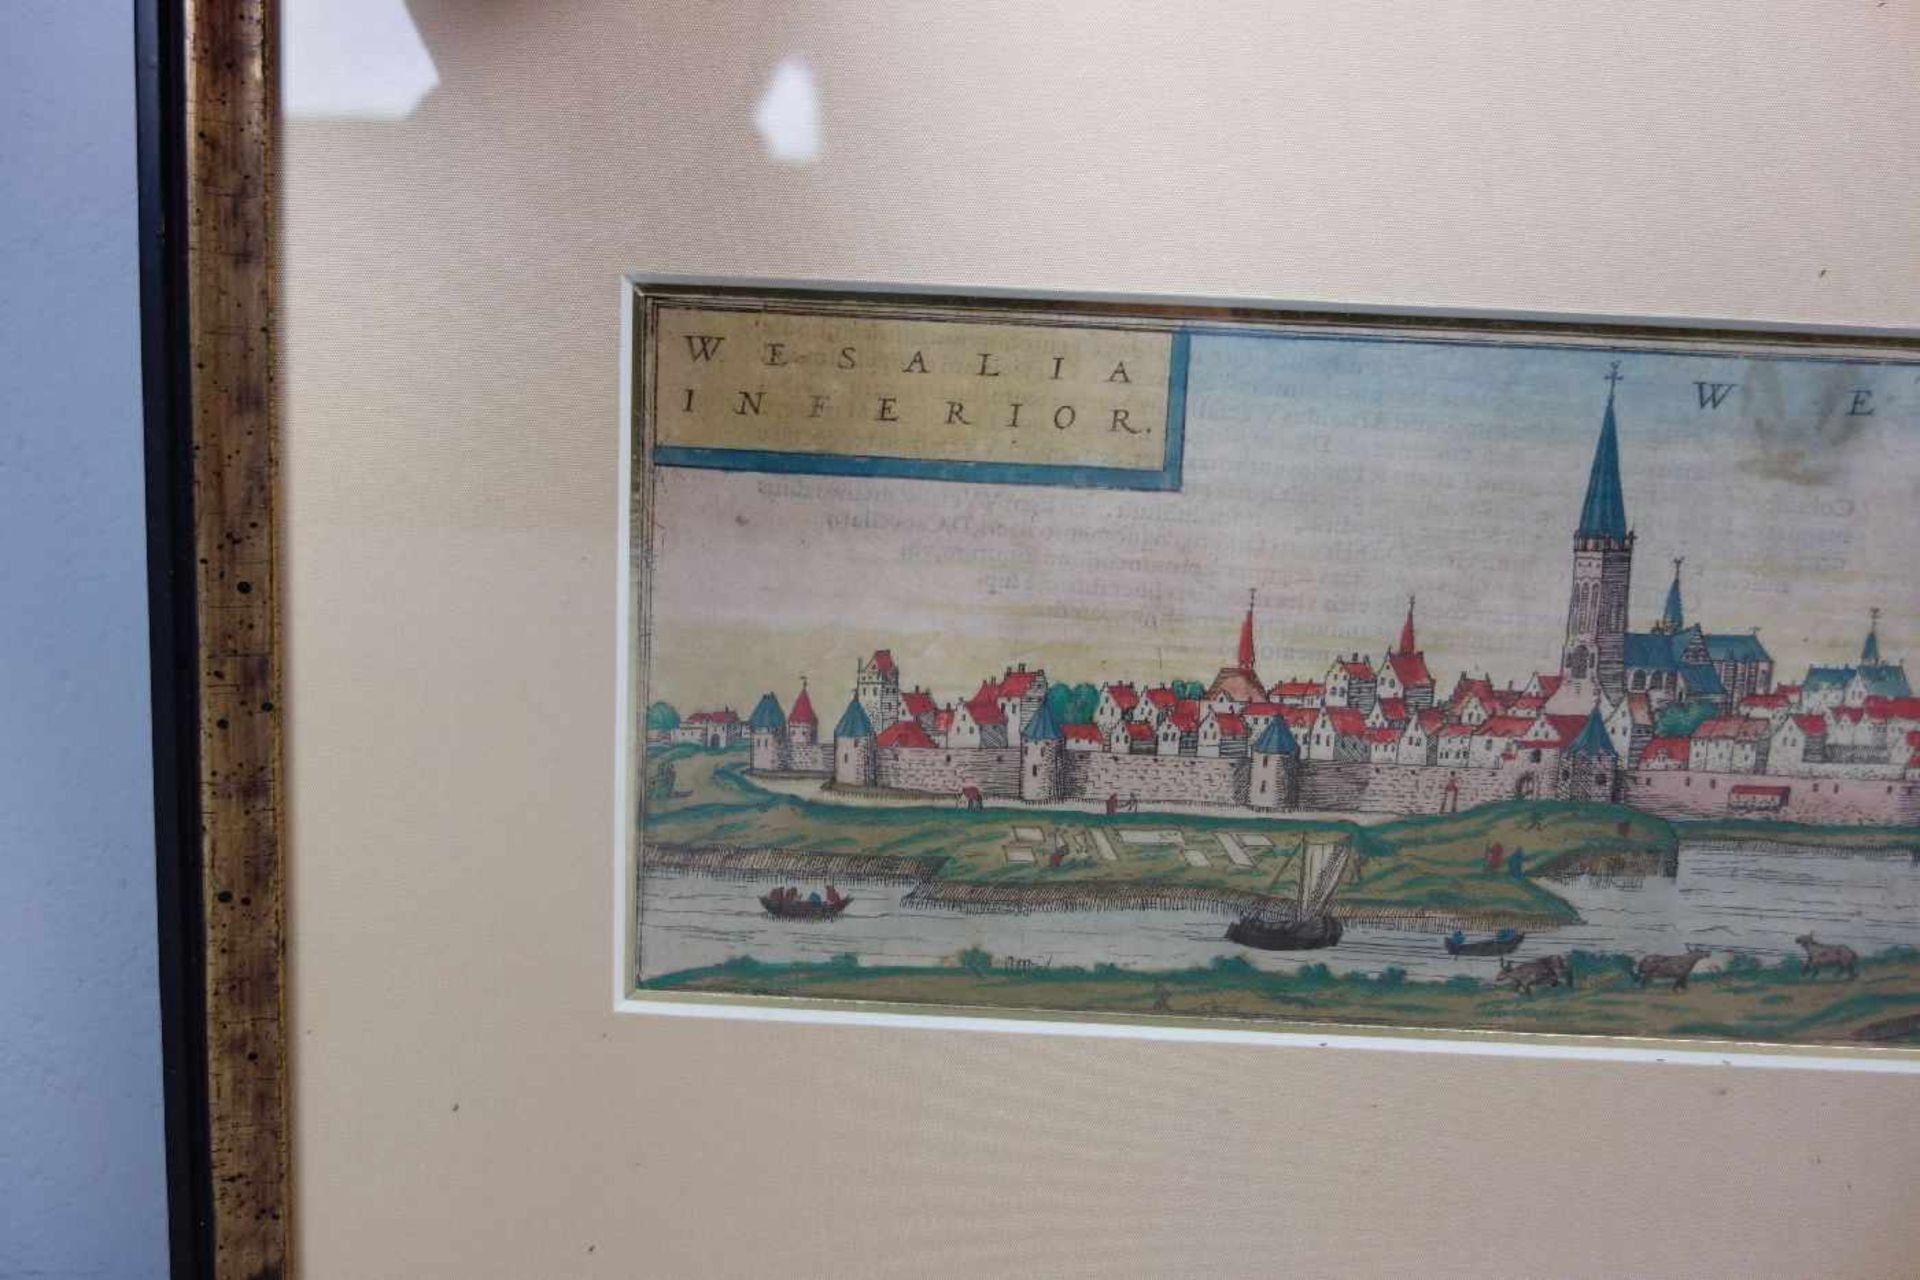 KOLORIERTER KUPFERSTICH WESEL, Ansicht der Stadt Wesel mit Titelkartusche "WESALIA INFERIOR"; aus - Image 2 of 4